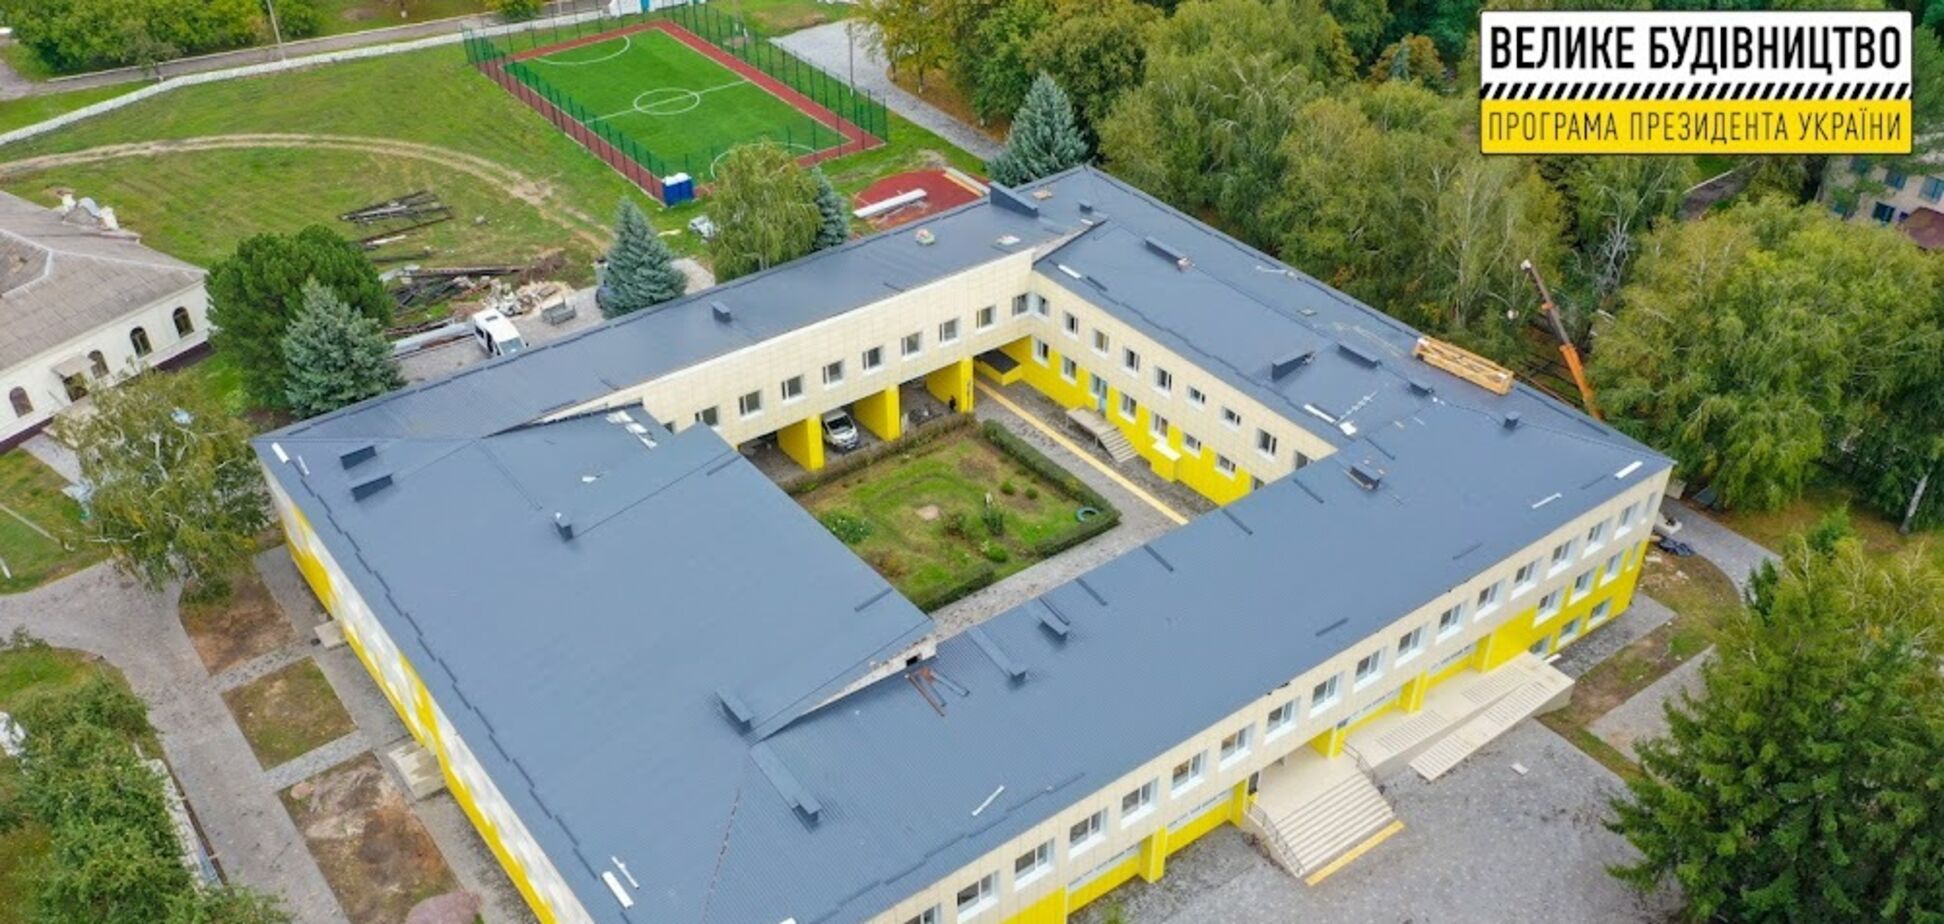 У Дніпропетровській області 'Велике будівництво' Зеленського реконструює школу, що стояла без ремонту пів століття